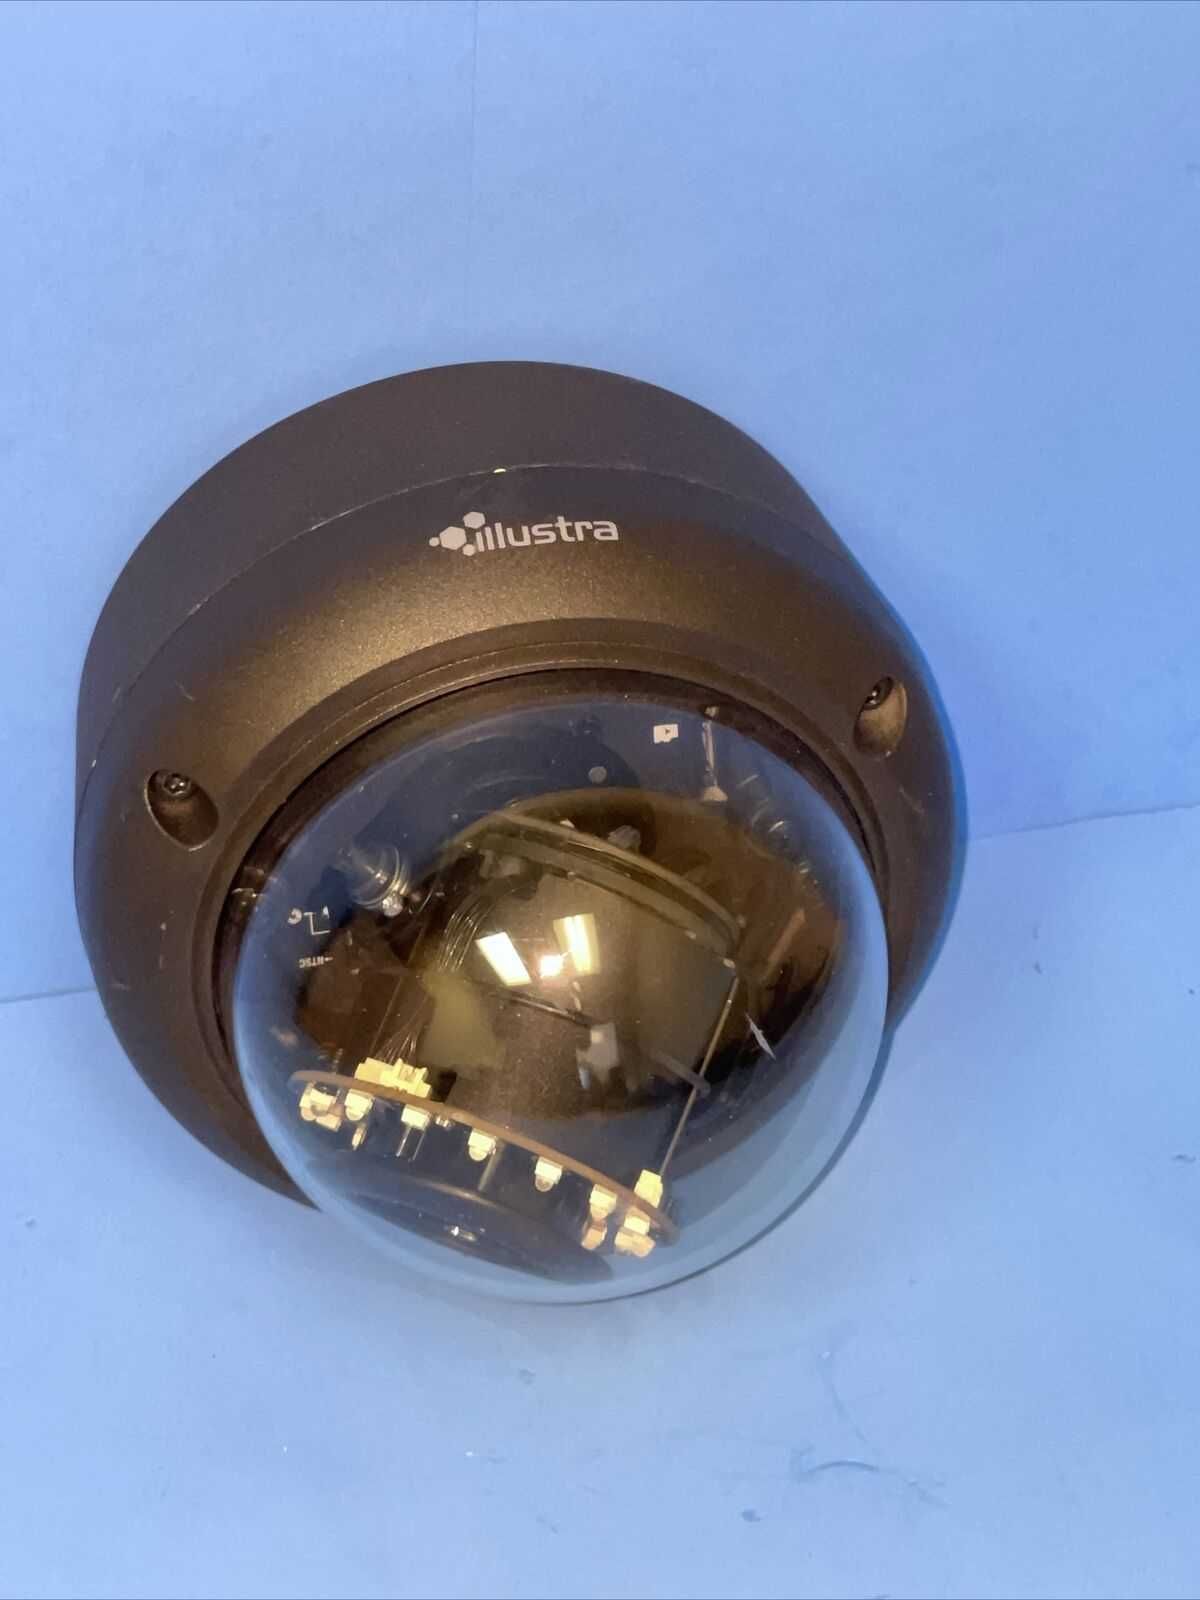 Вандалозащищенная IP камера 2МП с обьективом 3-9 мм Illustra (США)